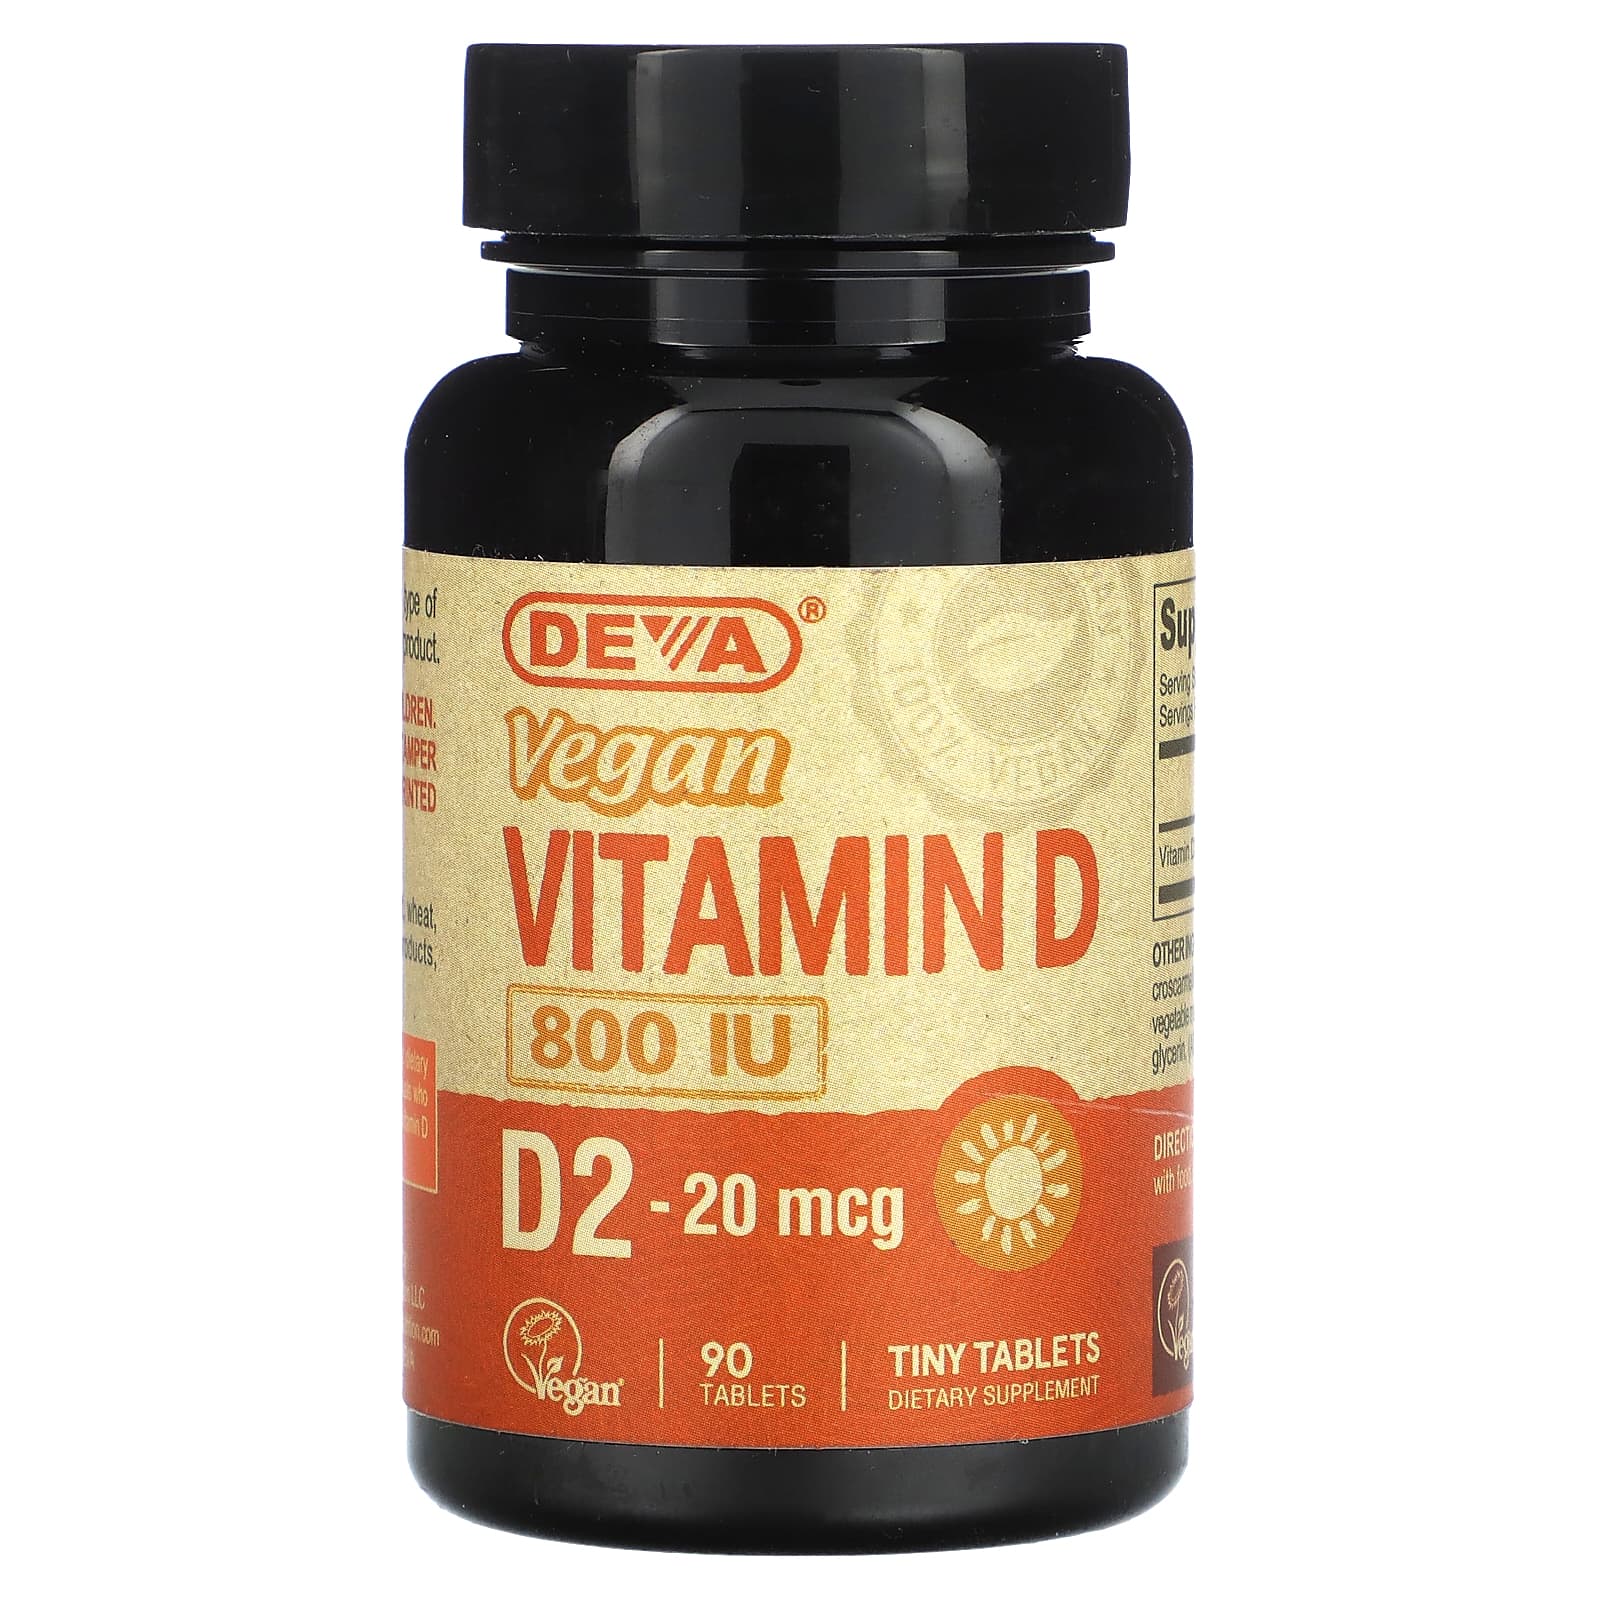 Deva Витамин D веганский 800 МЕ 90 таблеток deva веганский витамин e со смешанными токоферолами 400 ме 90 веганских капсул